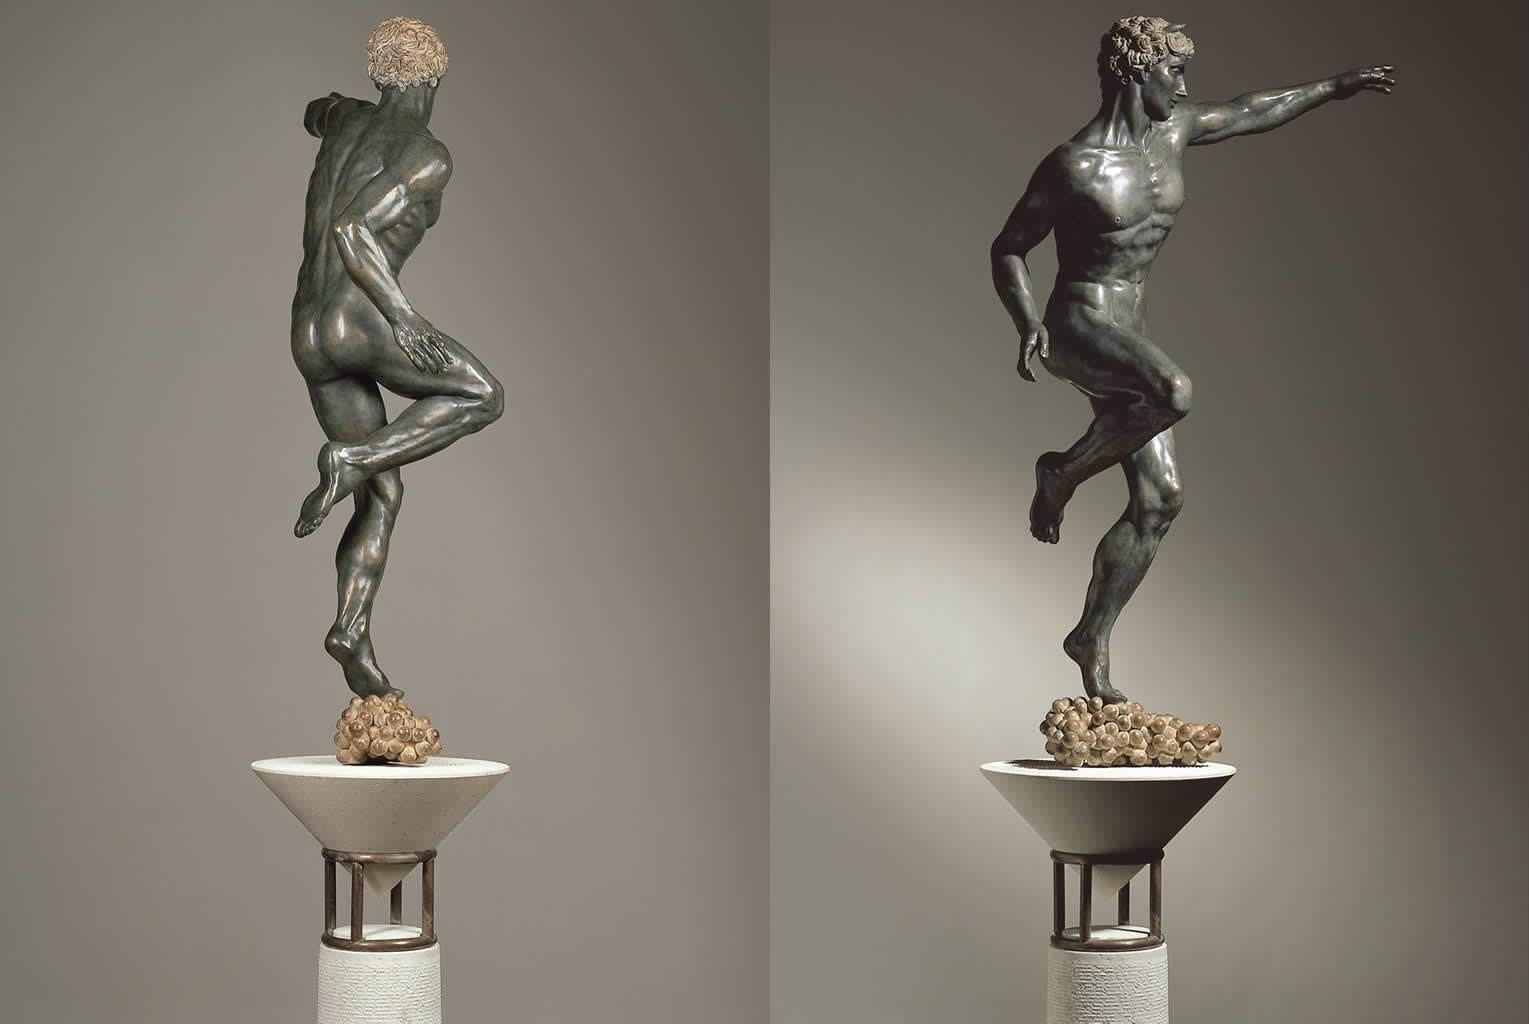 Dionysisch Bronze Sculpture Mythology Classical Contemporary Art